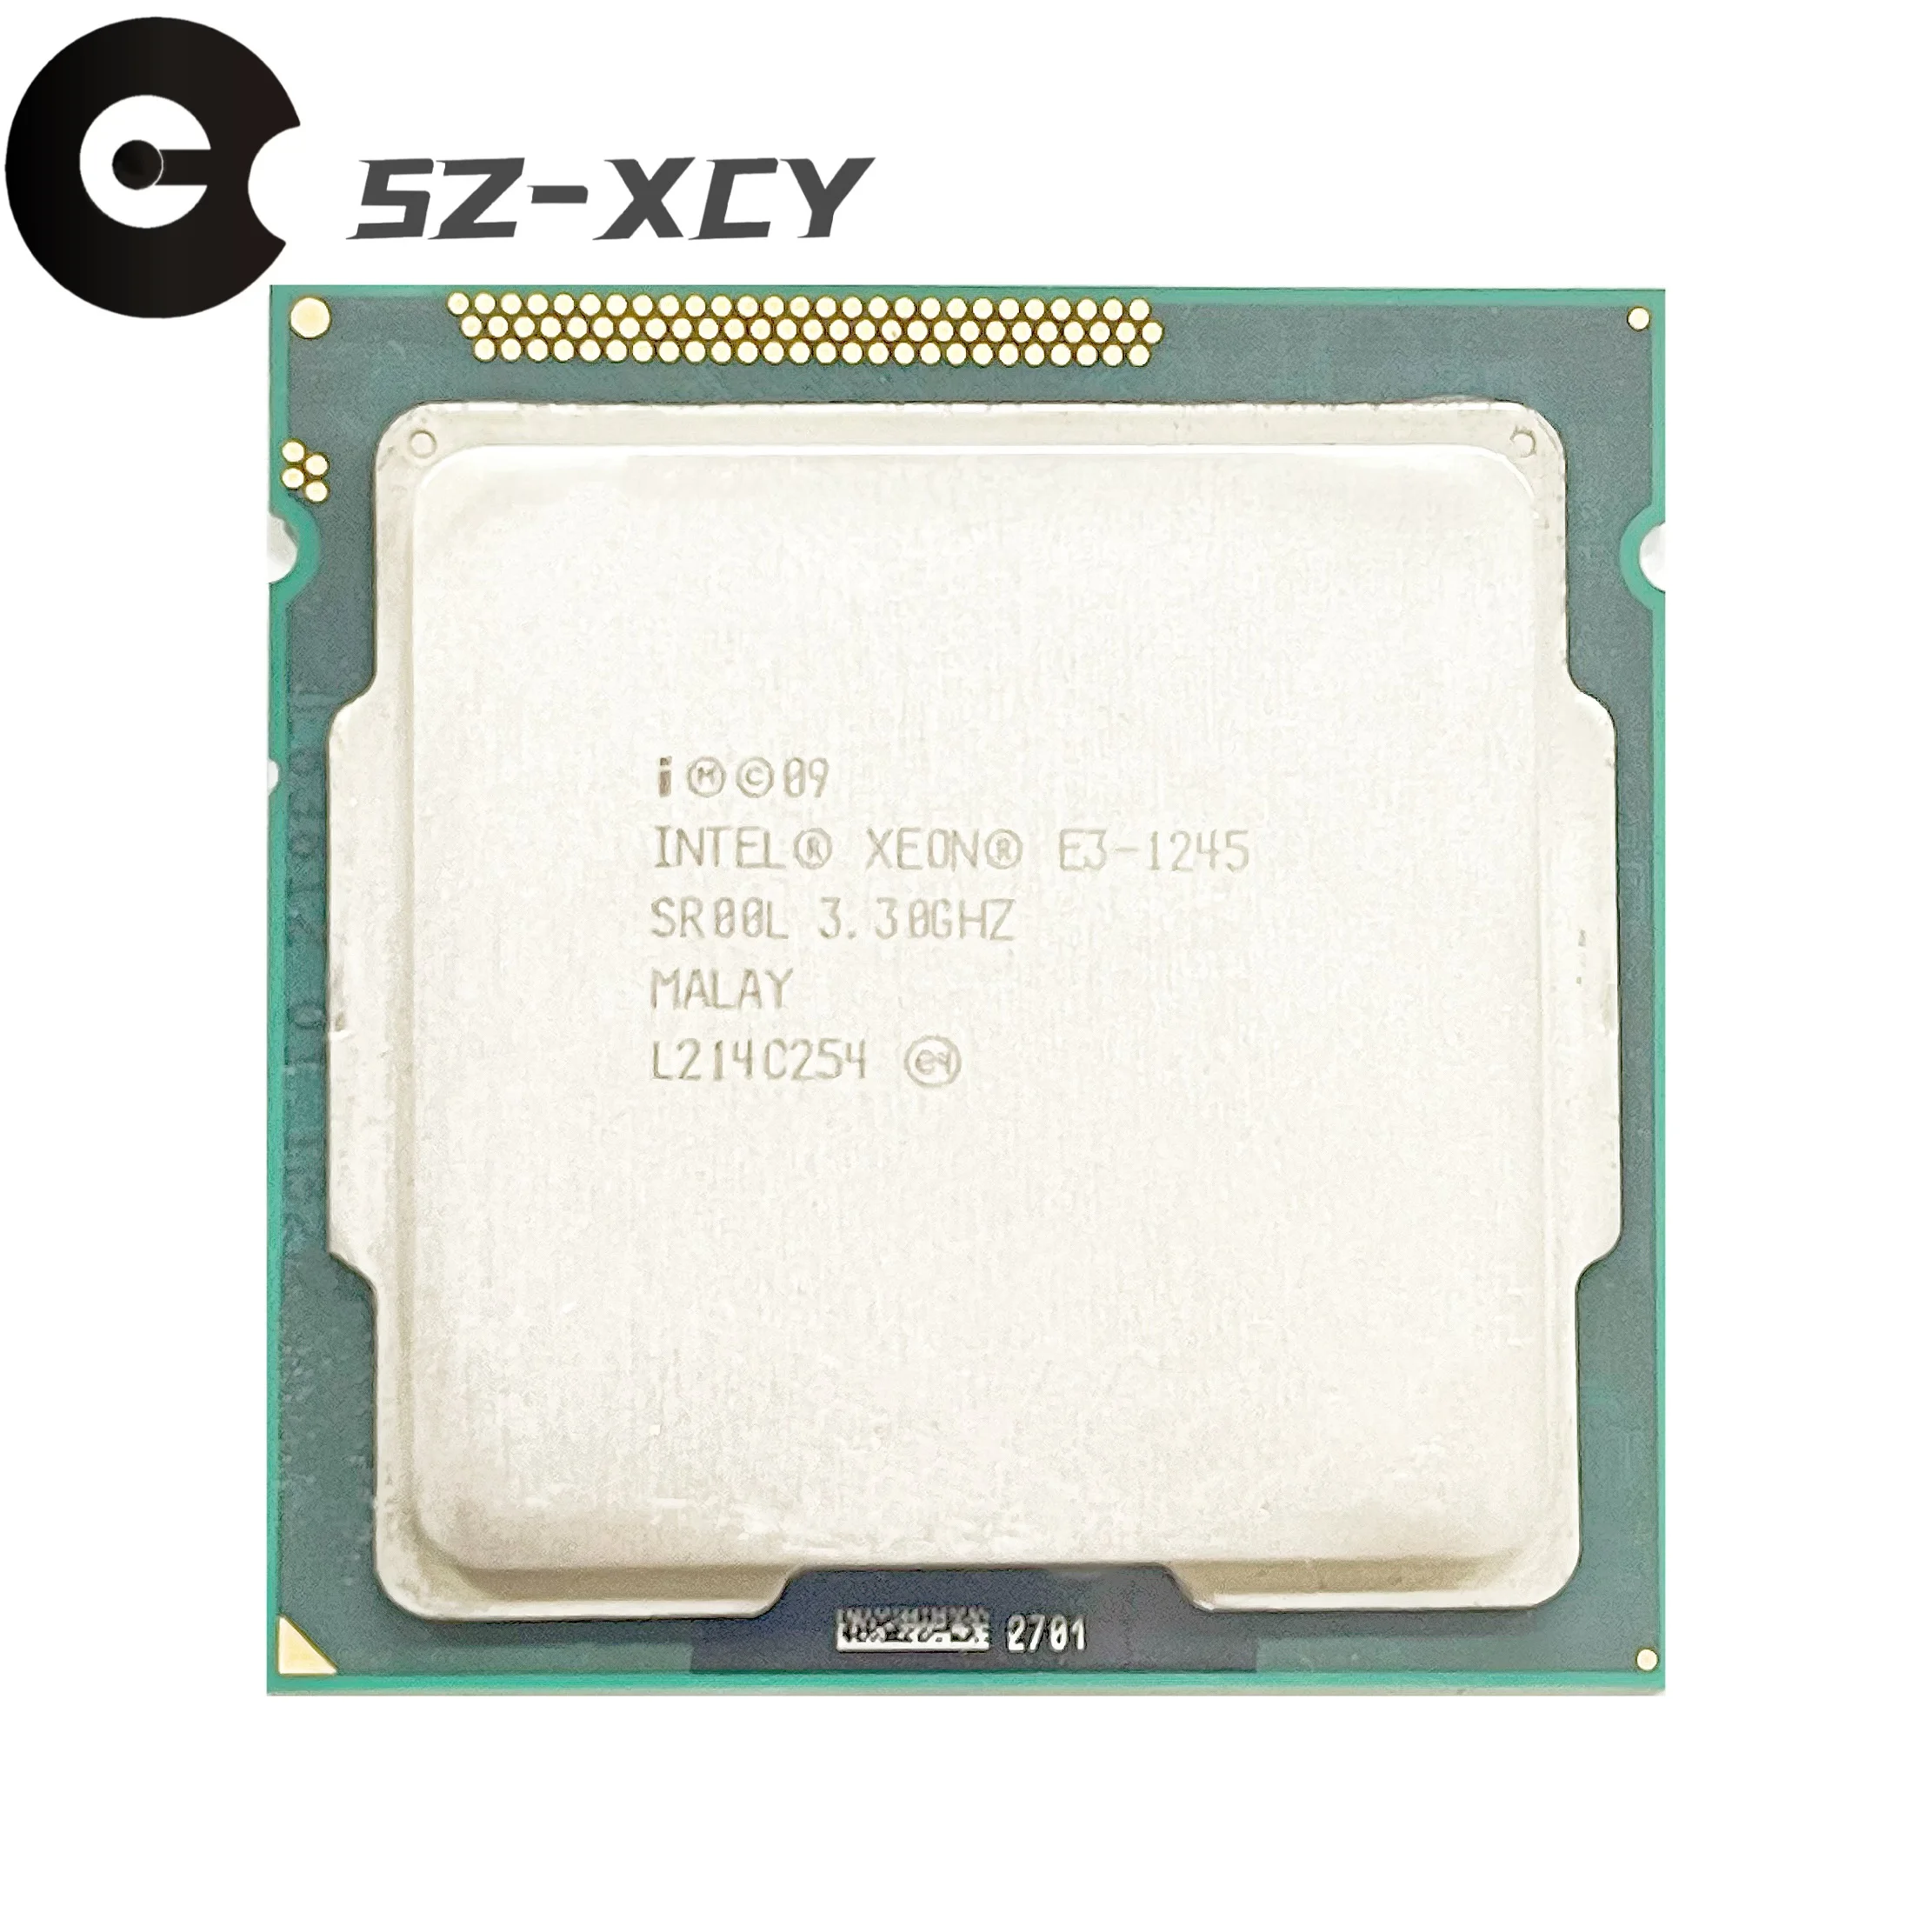 Intel Xeon E3-1245 E3 1245 3.3 GHz Quad-Core Eight-Thread CPU Processor 8M  95W LGA 1155